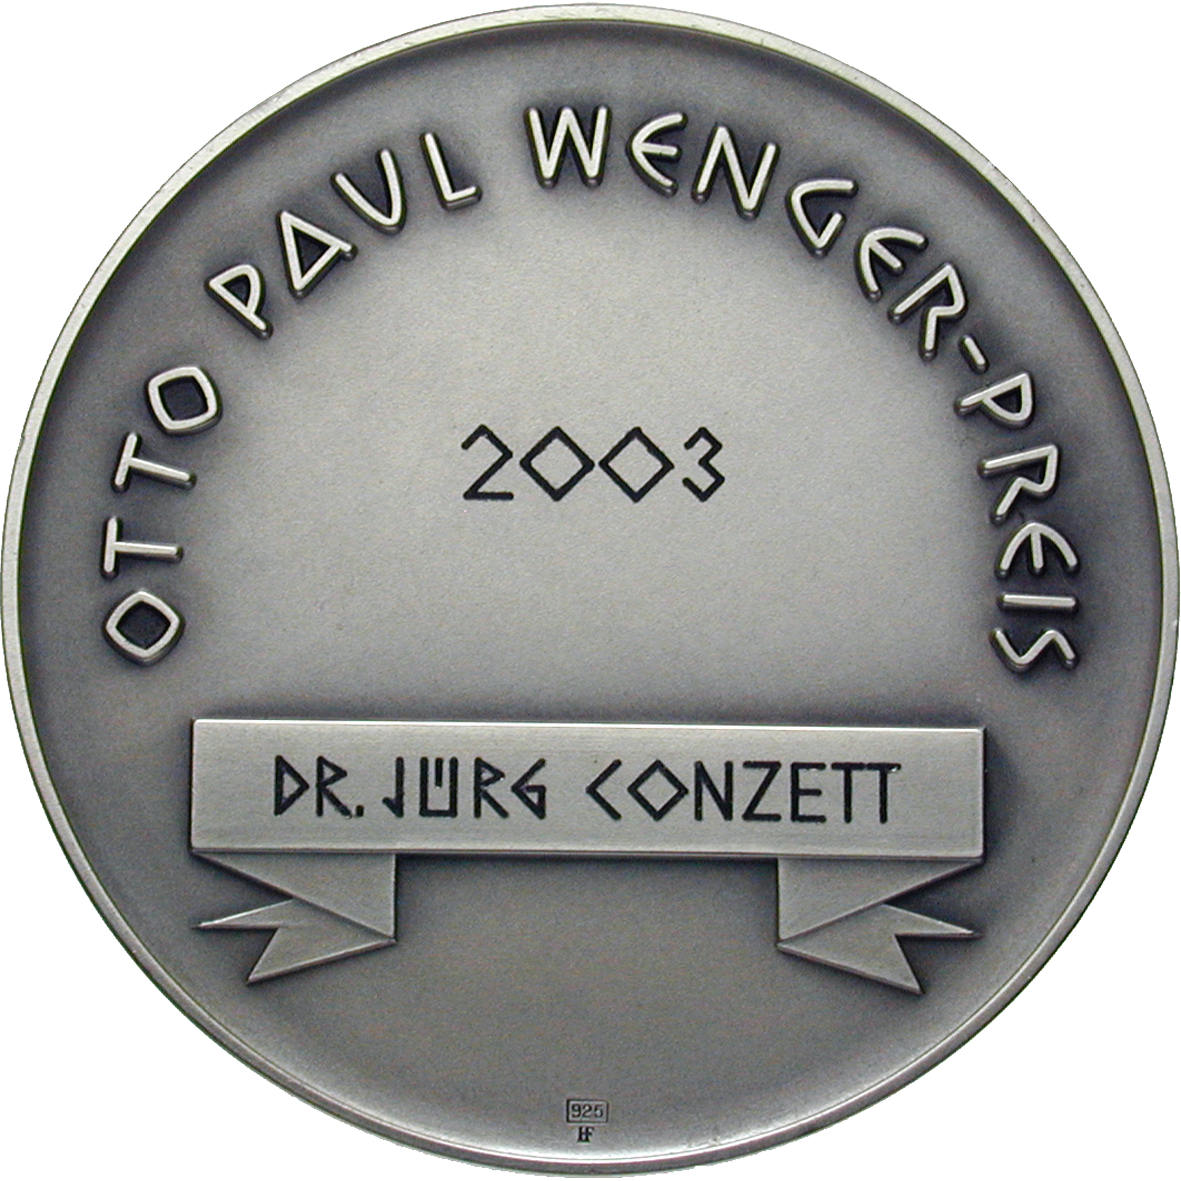 Otto-Paul-Wenger-Preis 2003, Medaille (reverse)